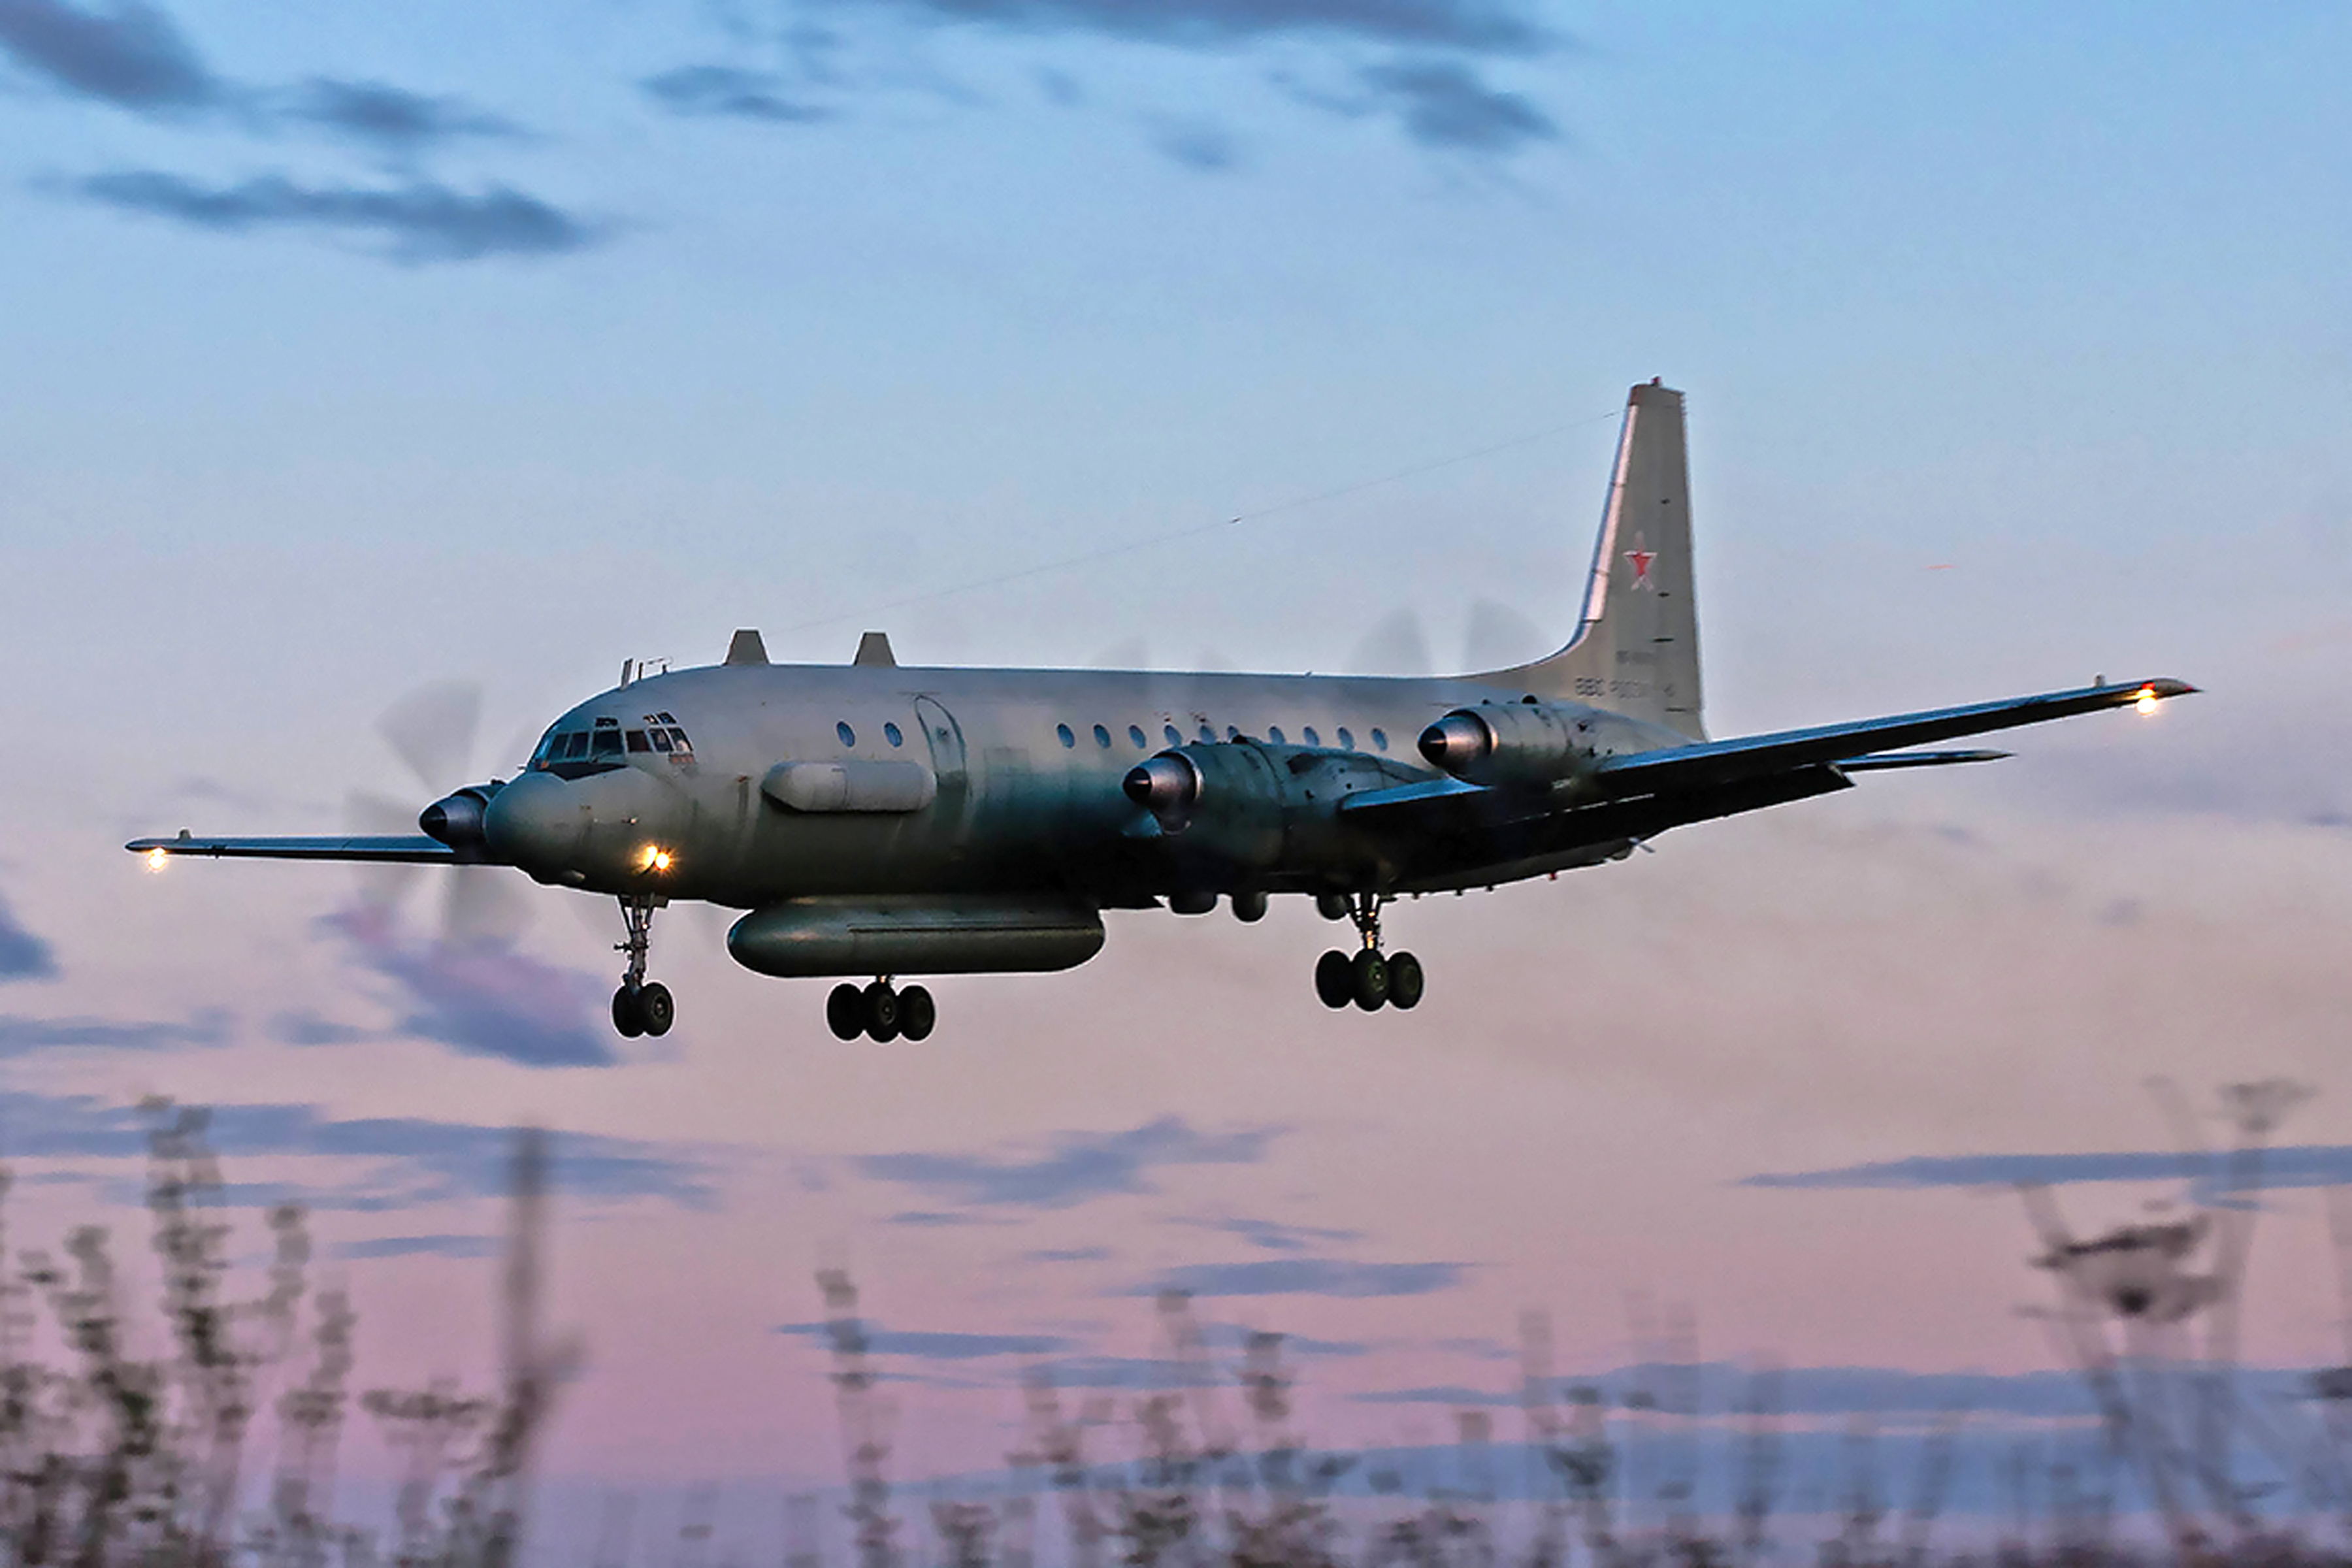 Un avion russe intercepté près d’un pays de l’OTAN